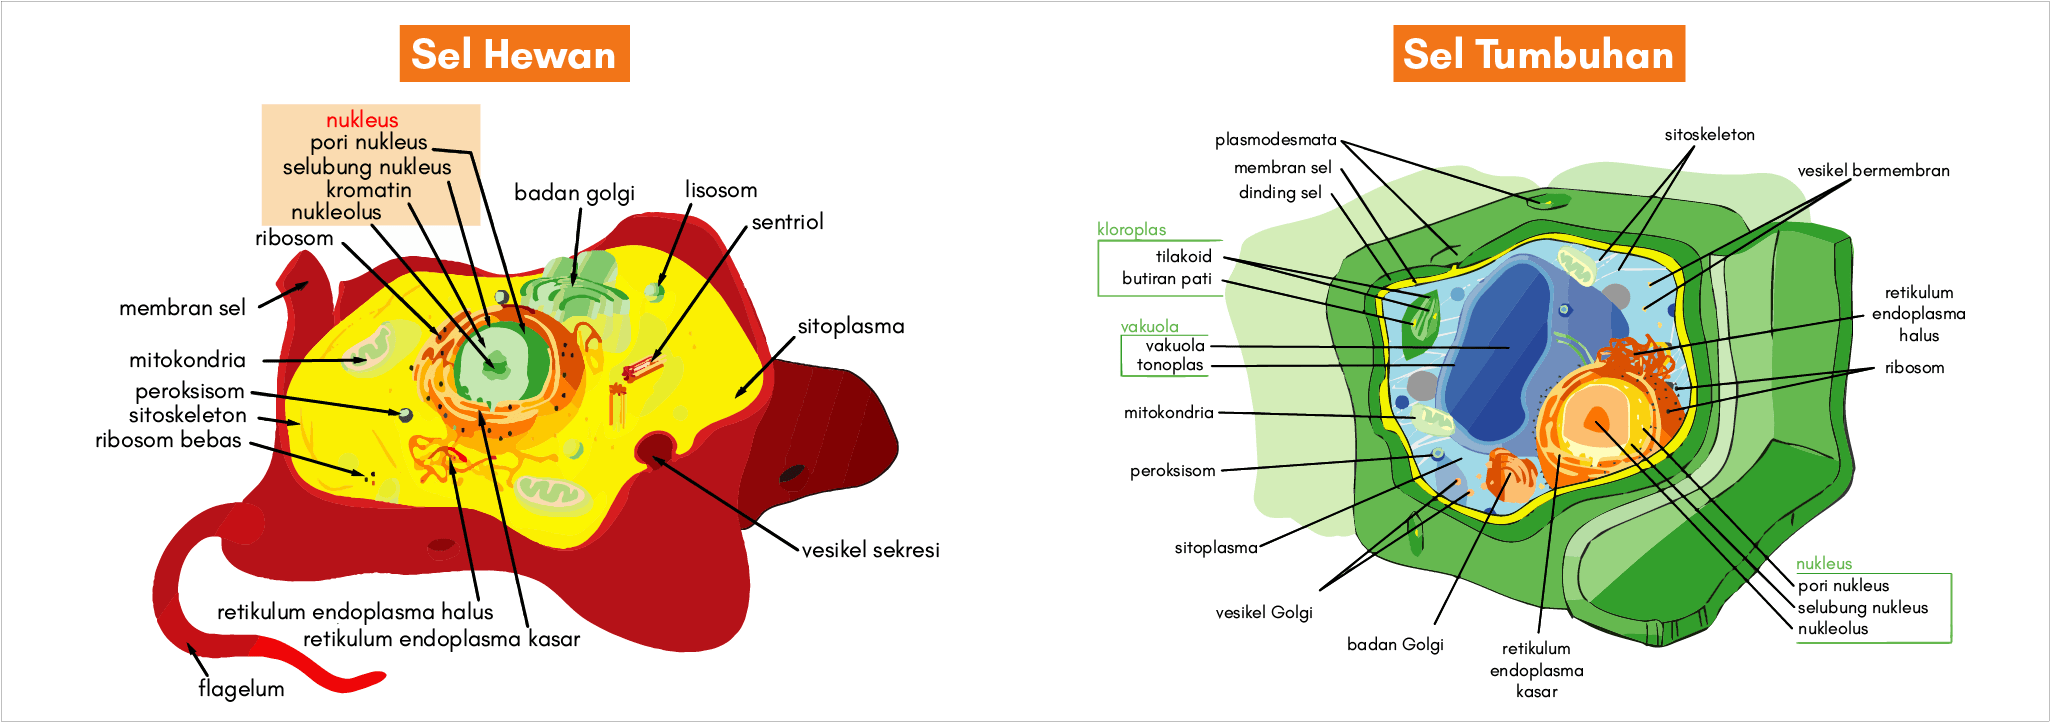 perbedaan sel hewan dan sel tumbuhan